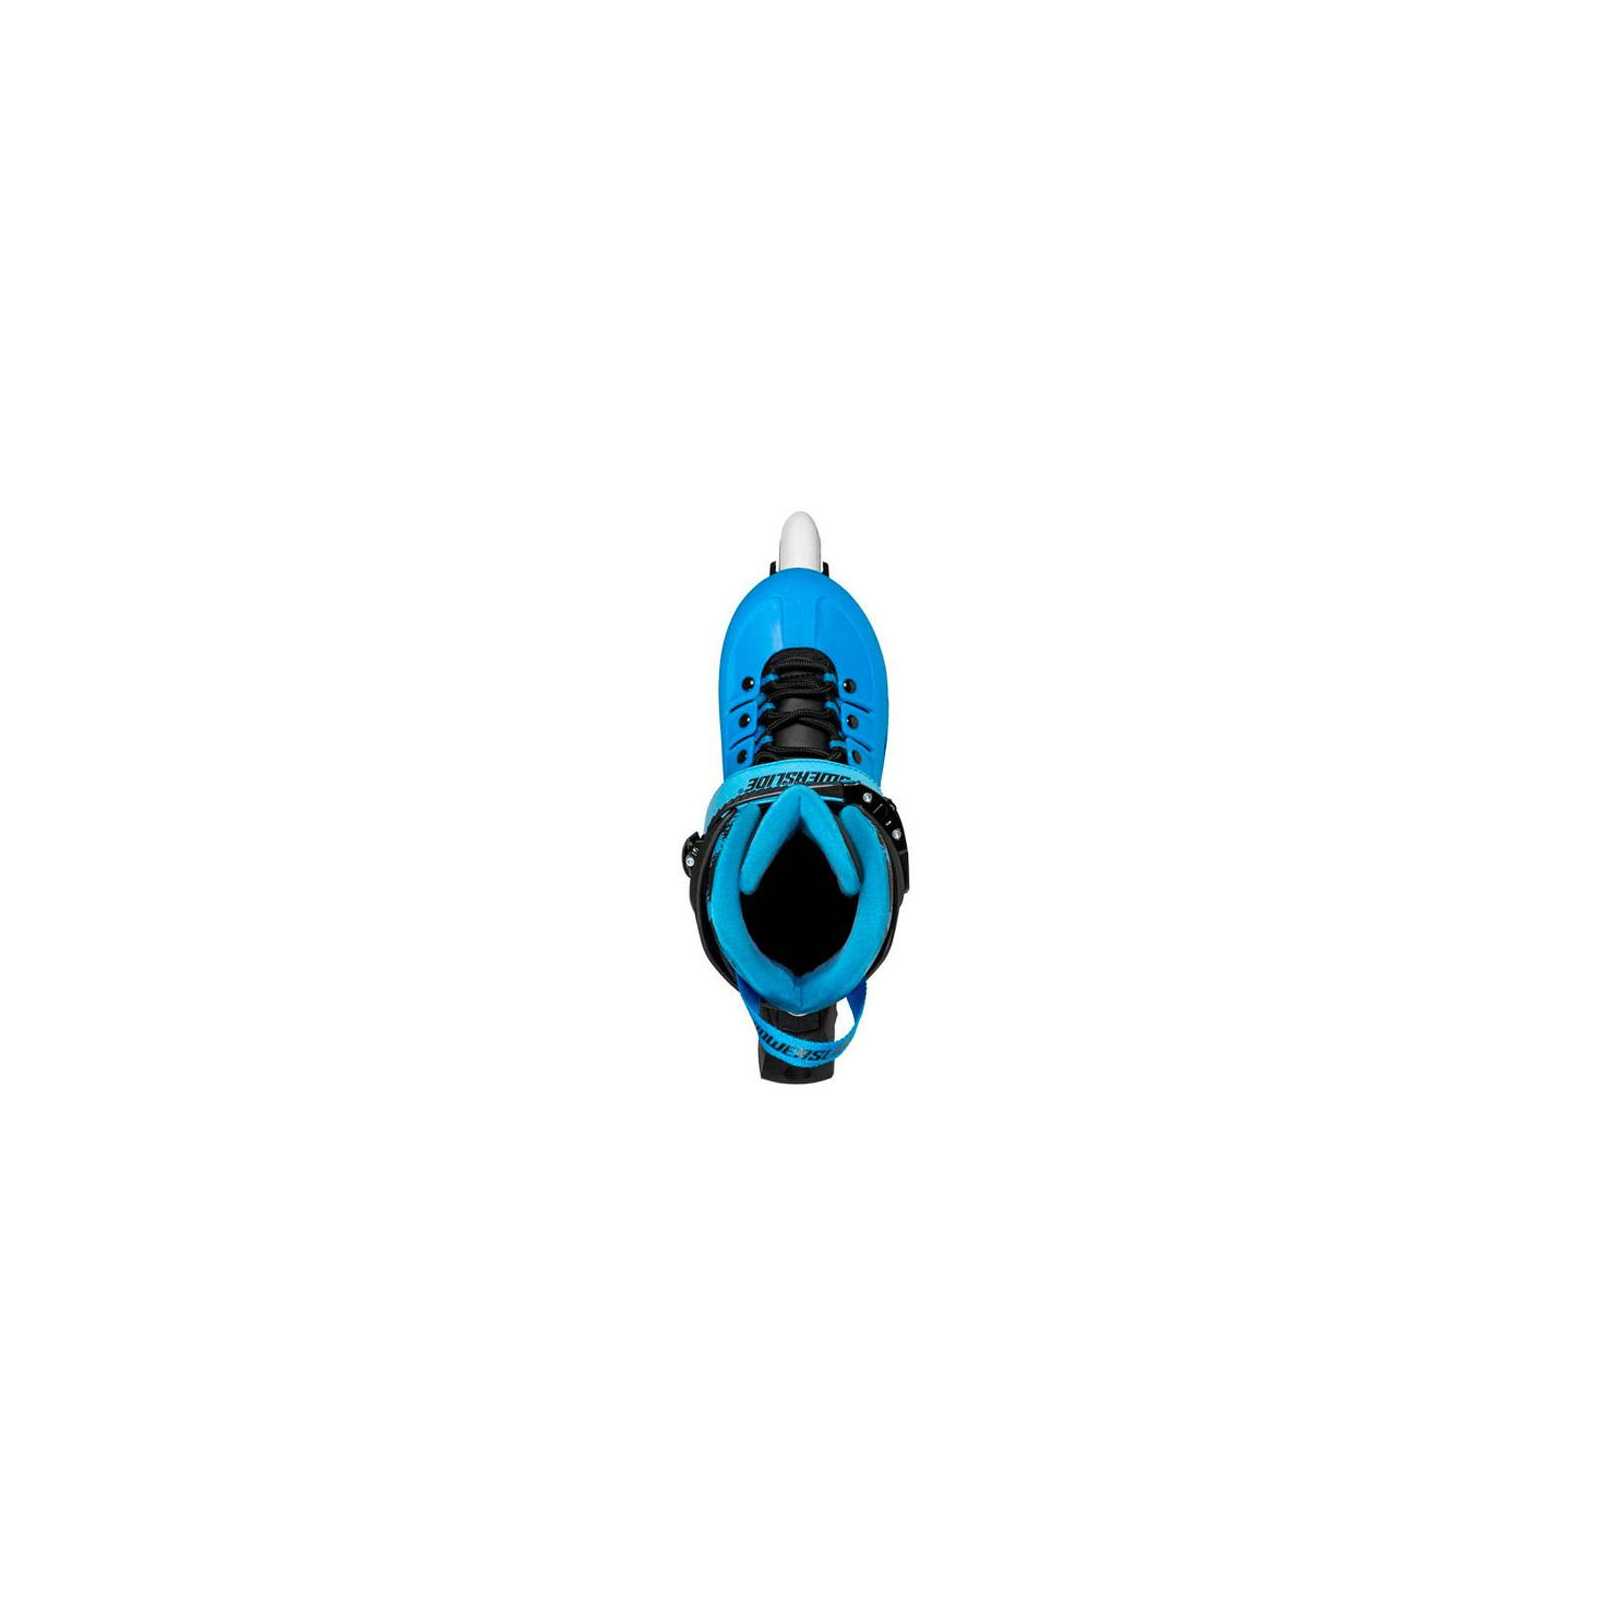 Роликовые коньки Powerslide 940612 Universe blue Hardboot 2018 37,0-40,0 (4040333466346) изображение 2